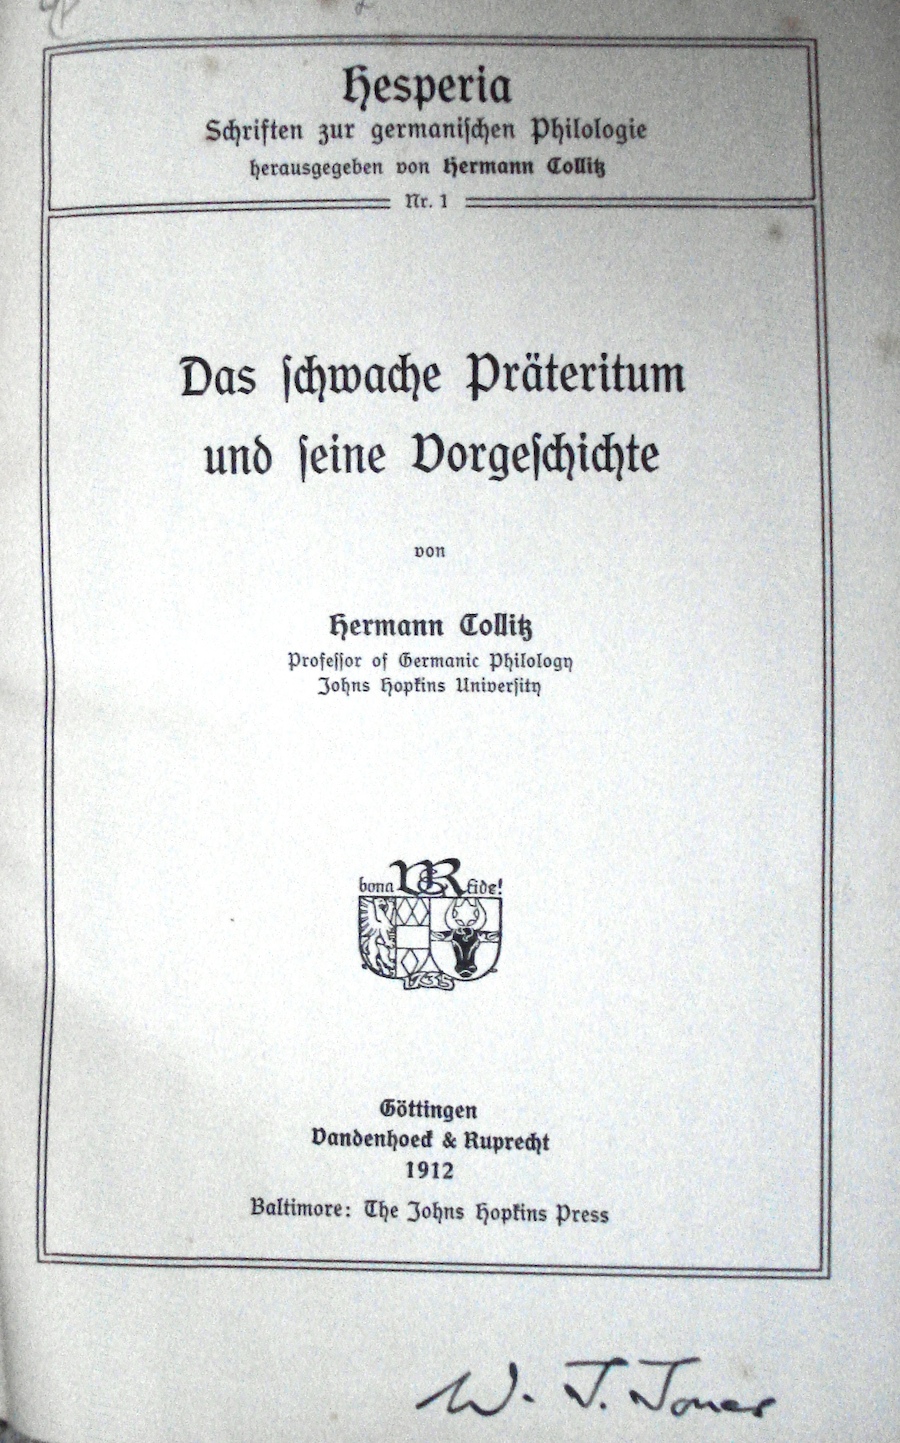 Das schwache Präteritum und seine Vorgeschichte, signed by J.R.R. Tolkien